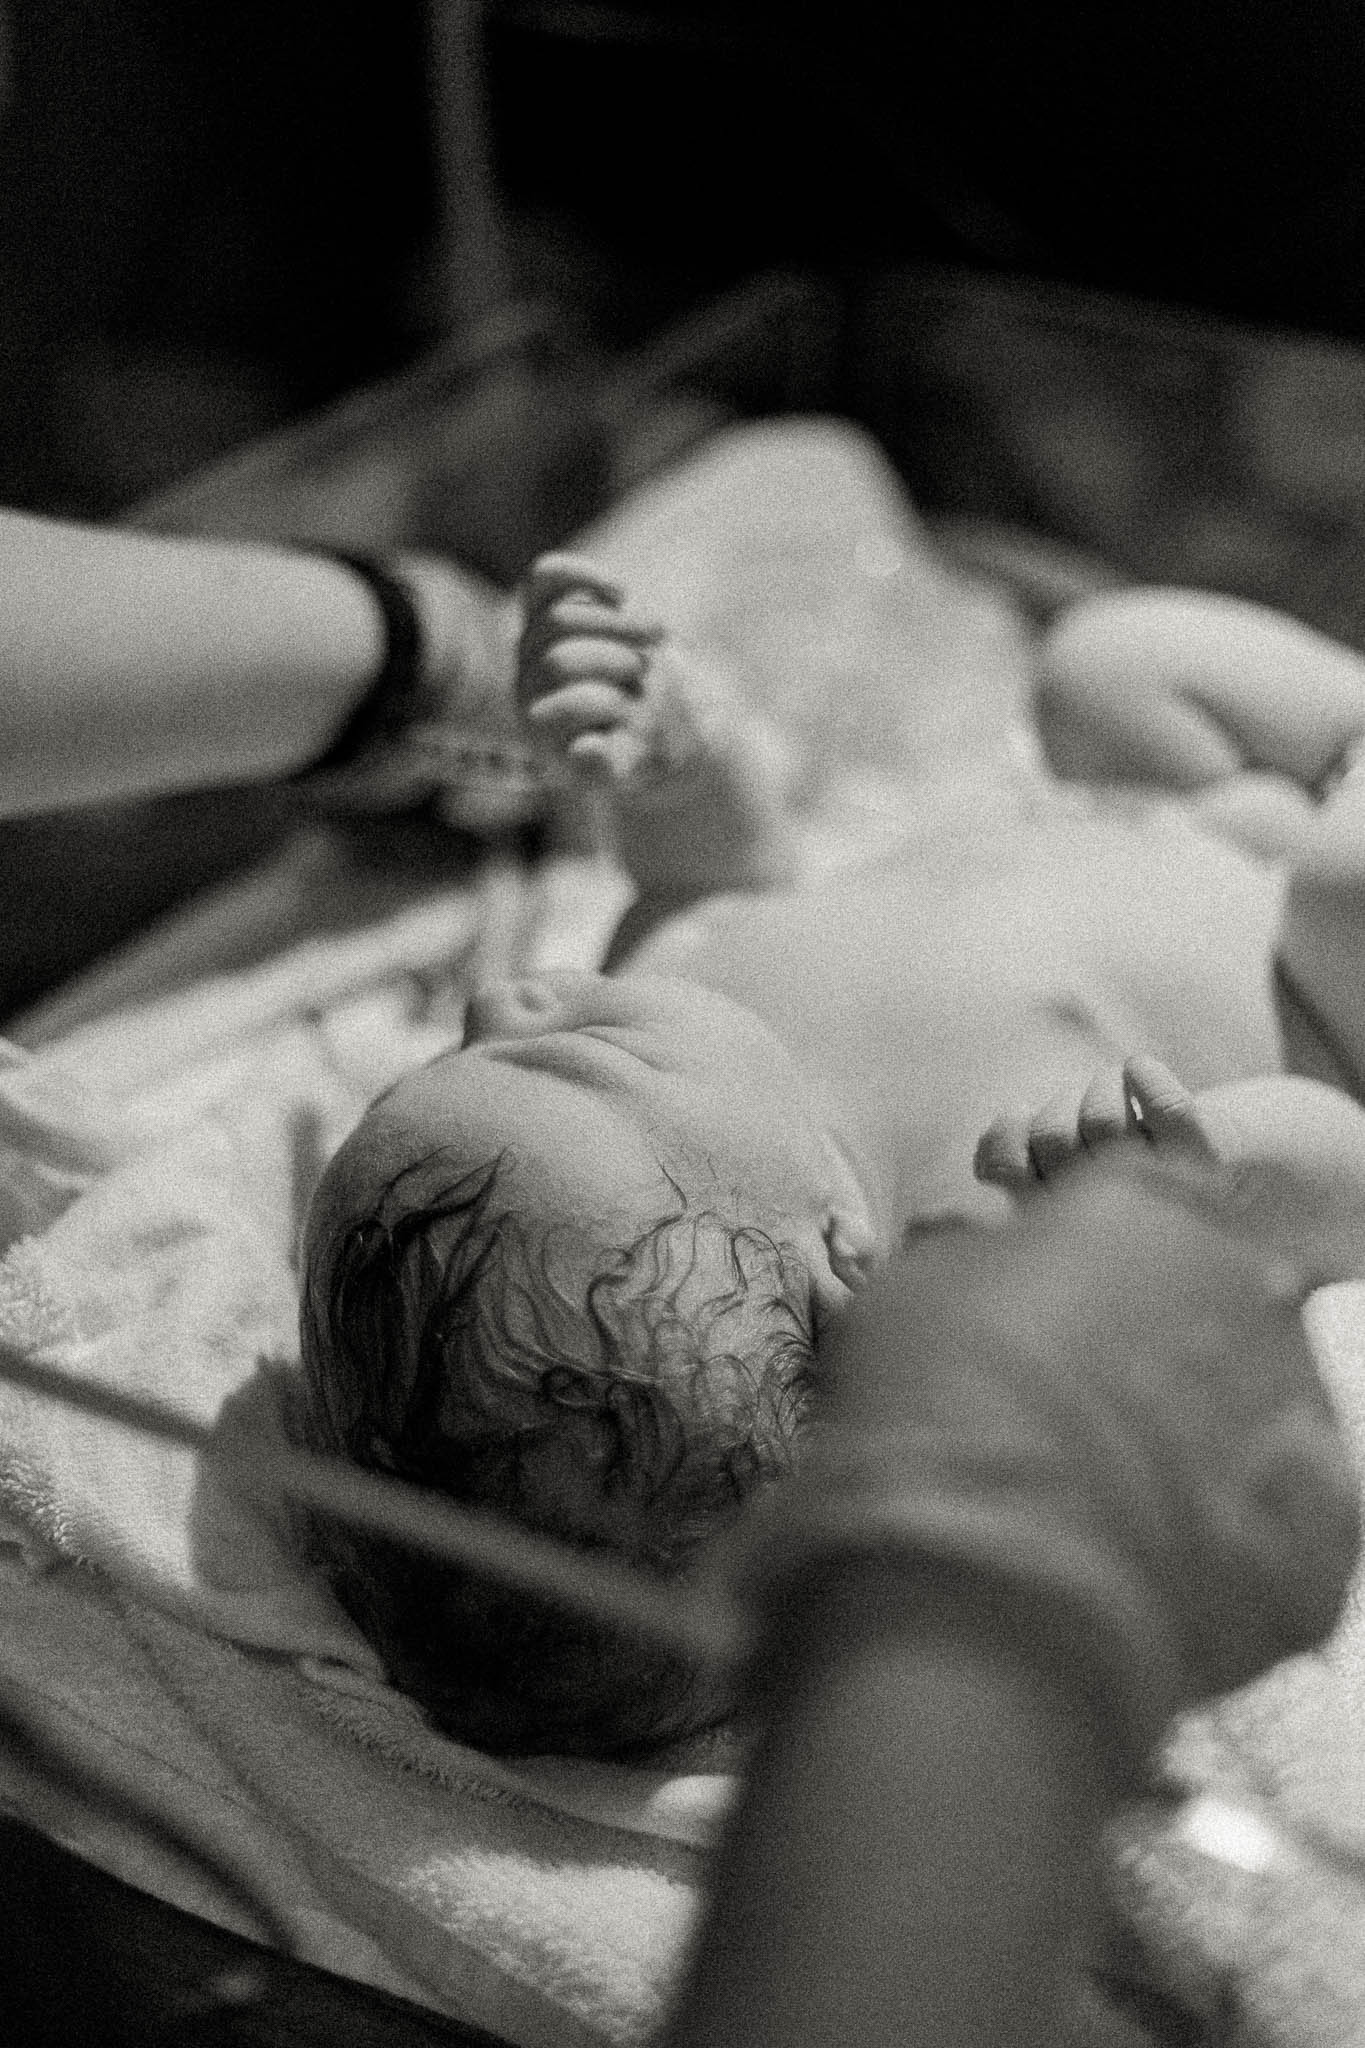 arlington birth photographer, baby's first bath